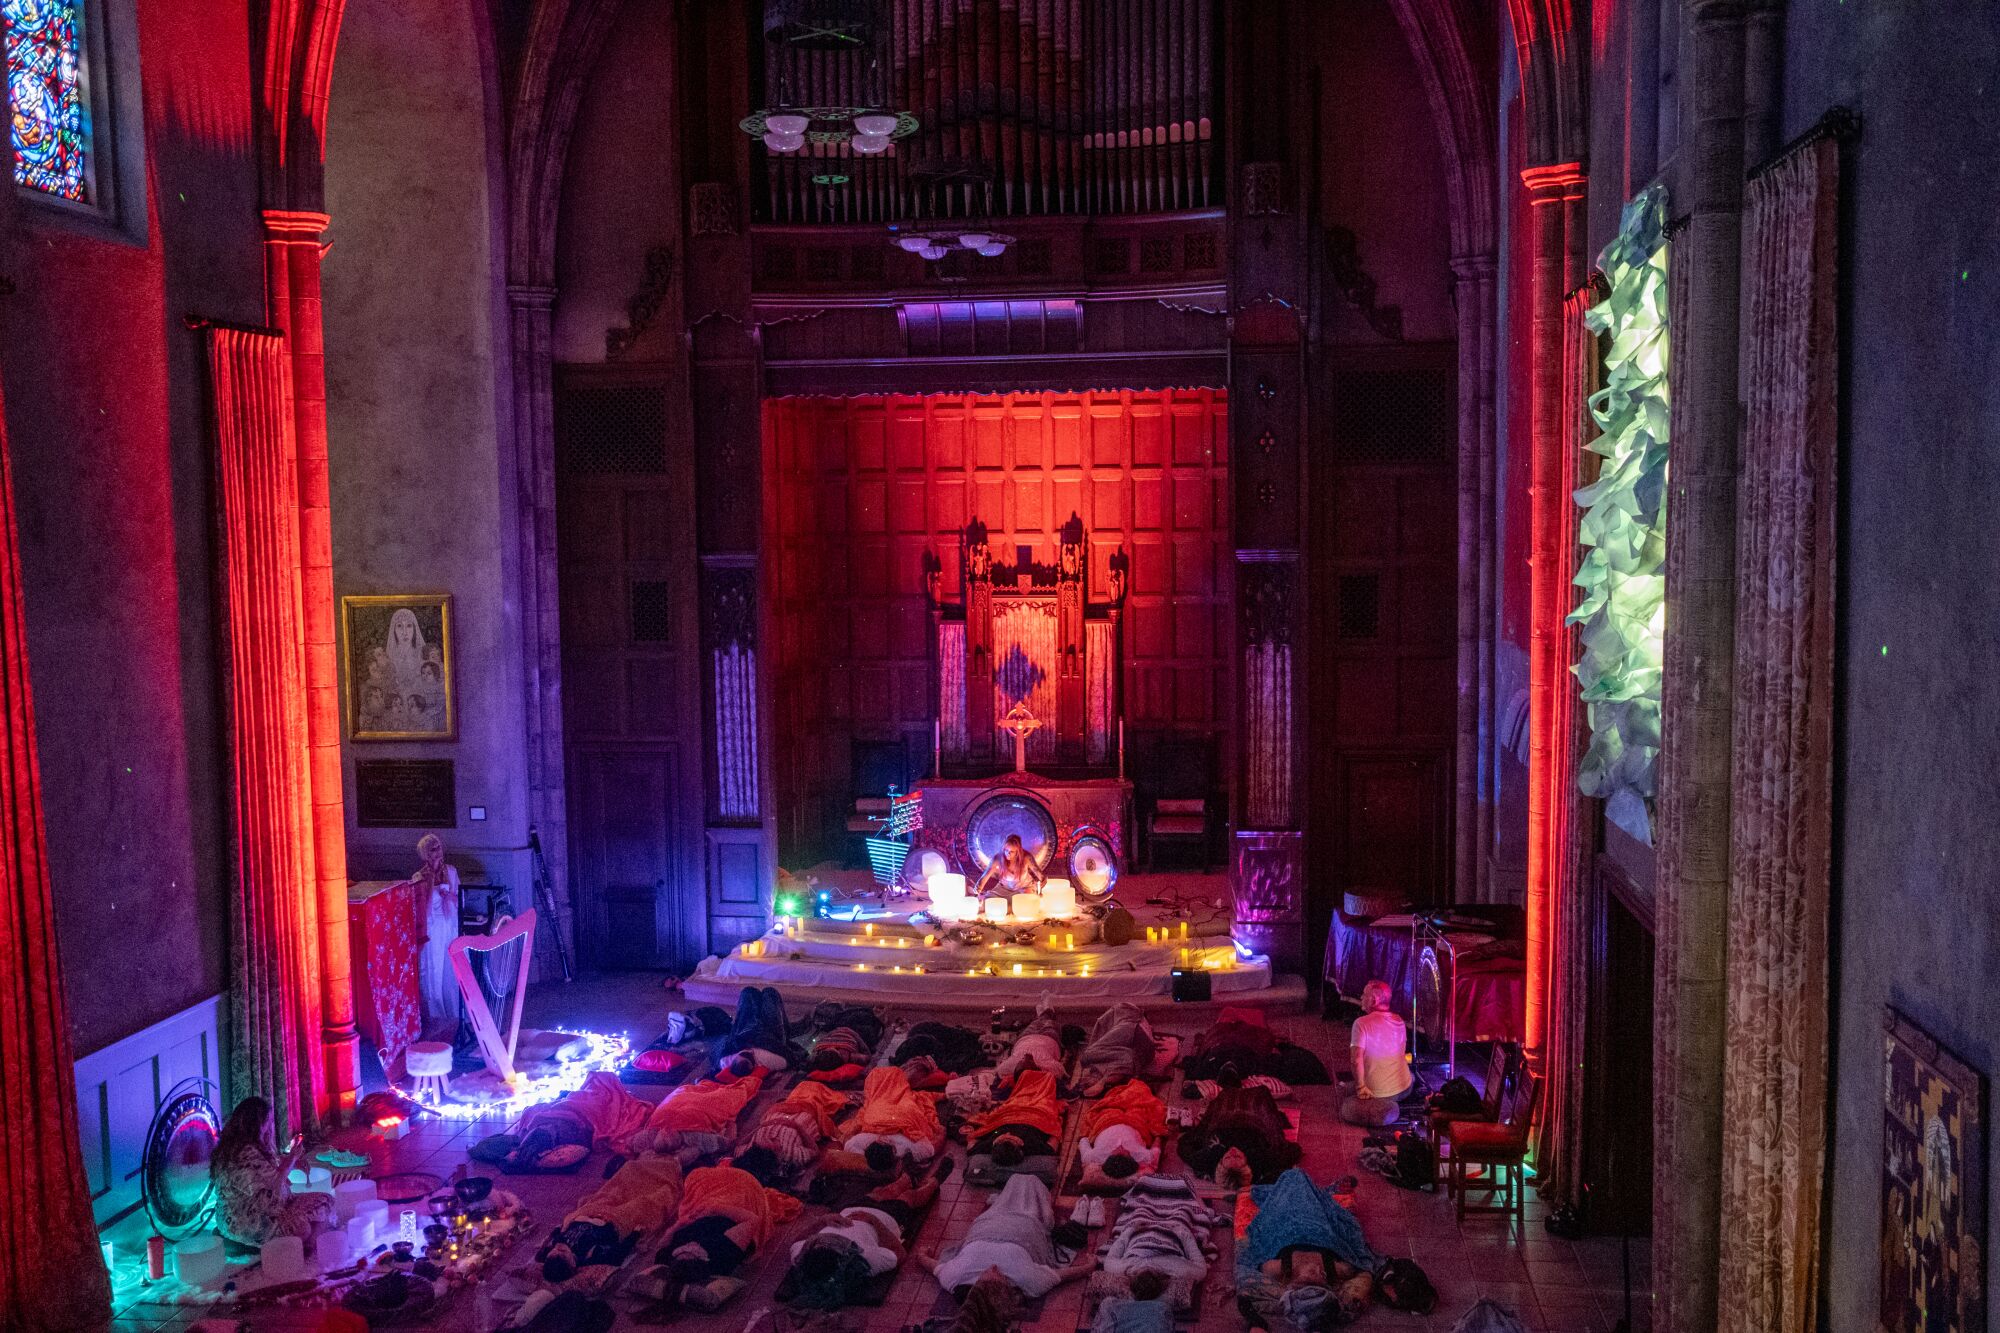 İnsanlar, ses banyosu için renkli üstten aydınlatma ve parlayan ışıklarla dekore edilmiş neo-gotik bir kilisede yerde yatıyordu.